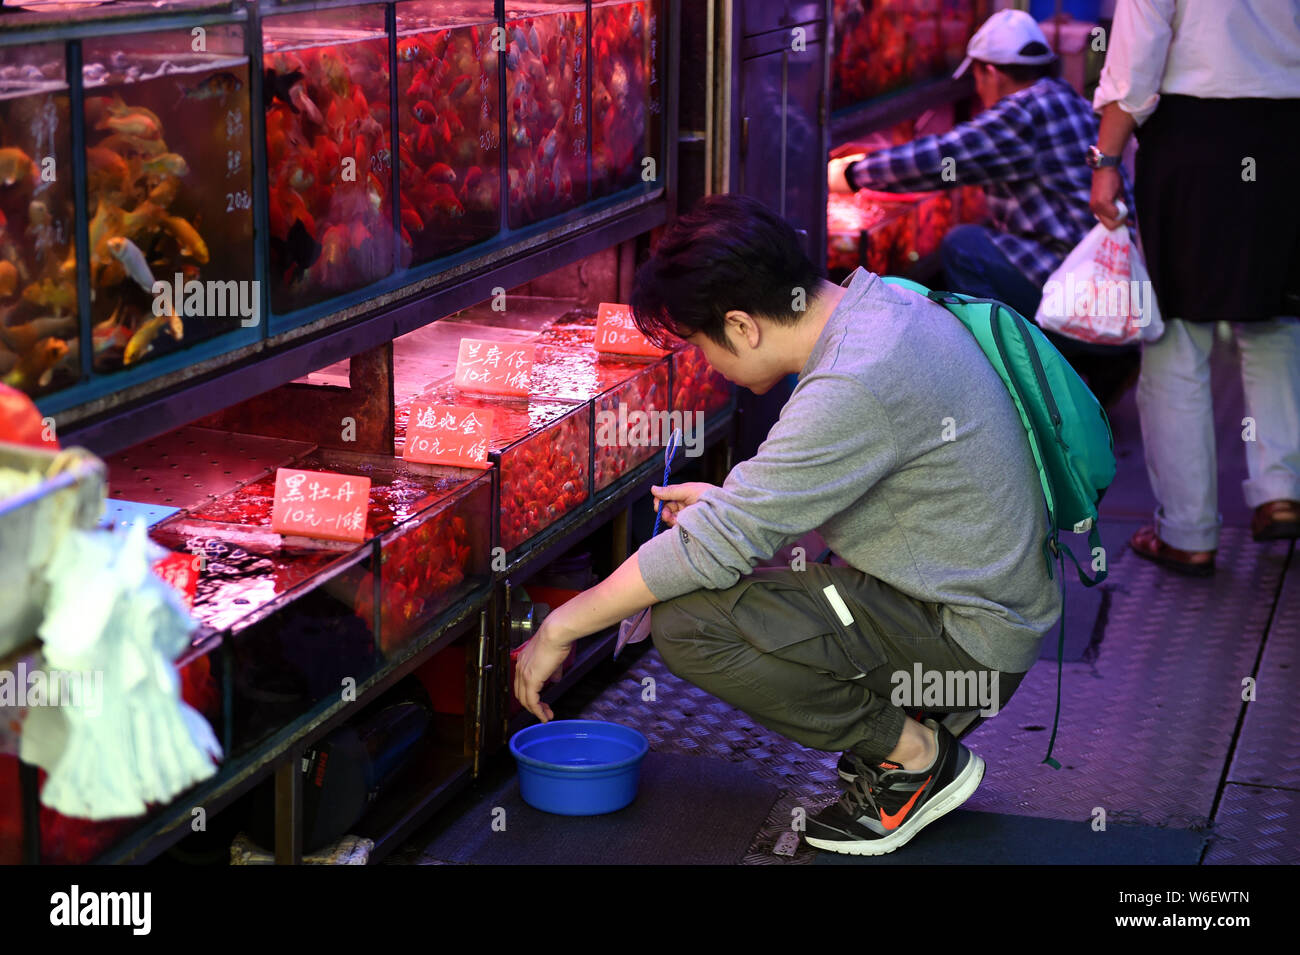 Un visiteur consulte les poissons et produits aquatiques vendus dans des sacs en plastique dans un magasin situé dans la rue Tung Choi à Hong Kong, Chine, 20 mars 2018. Le Tung Choi St Banque D'Images